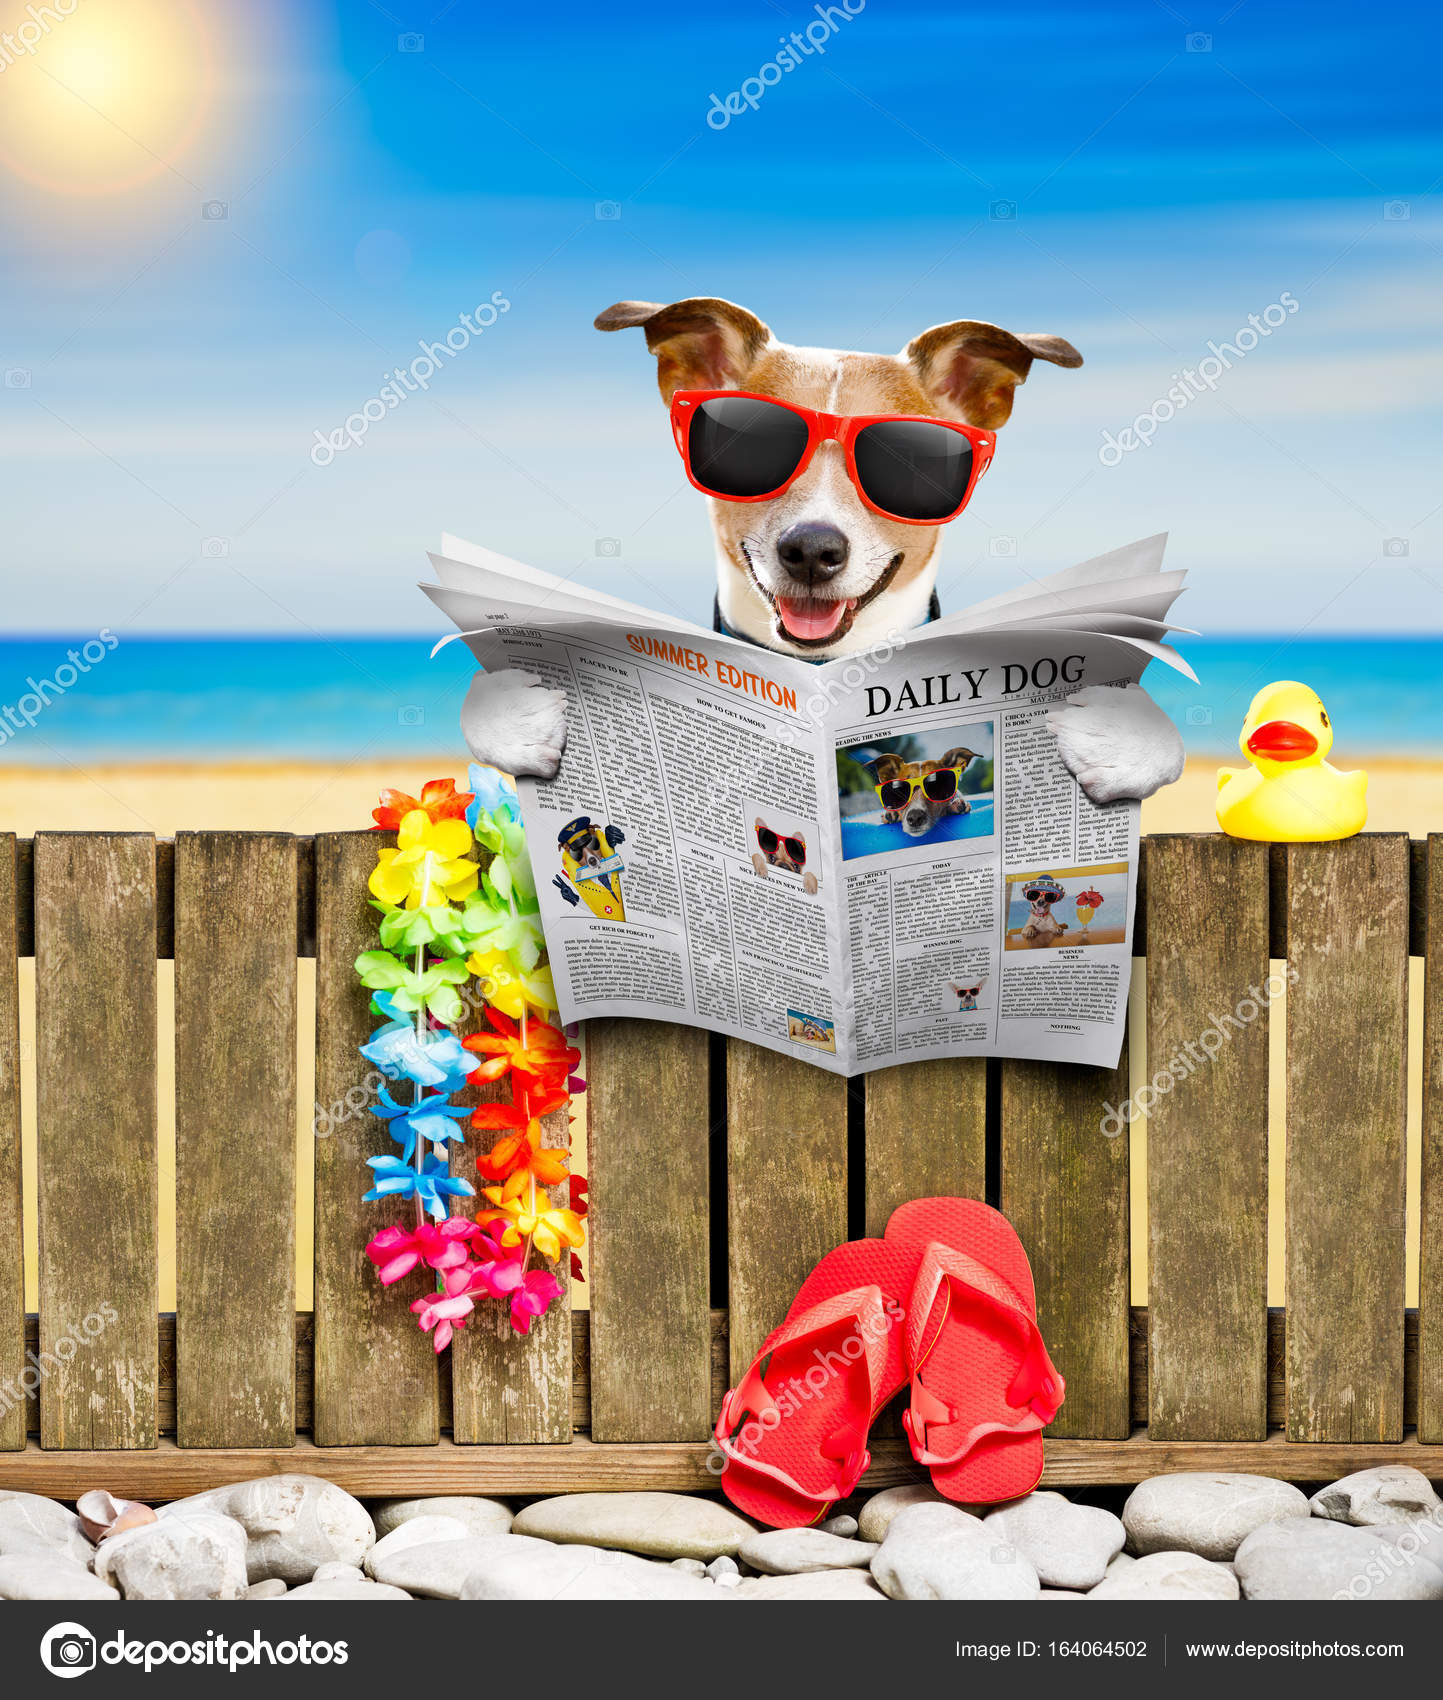 Tablet Helemaal droog Wrijven Hond op strand op zomervakantie vakantie ⬇ Stockfoto, rechtenvrije foto  door © damedeeso #164064502